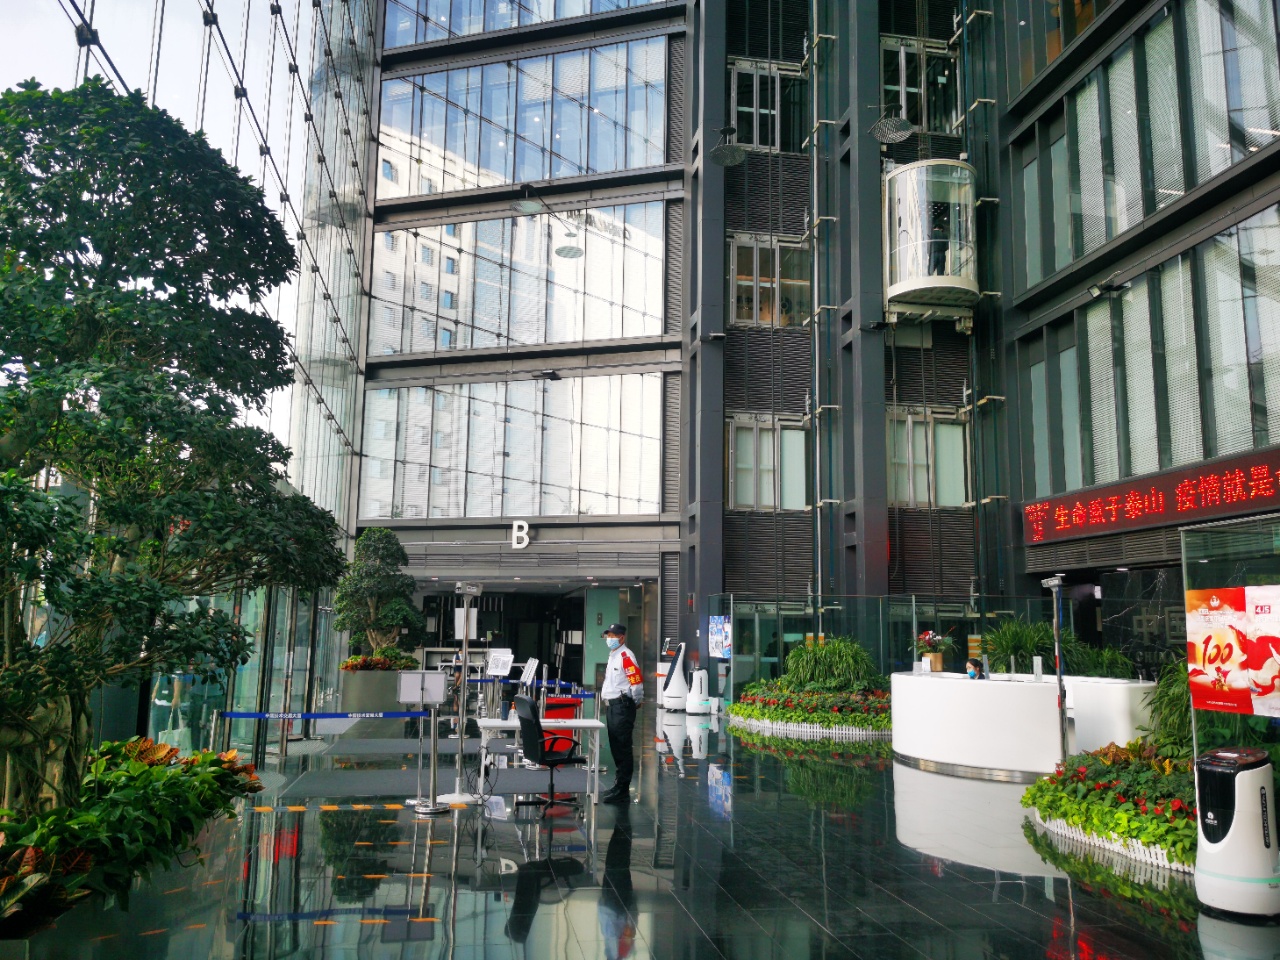 中国技术交易大厦b座入口